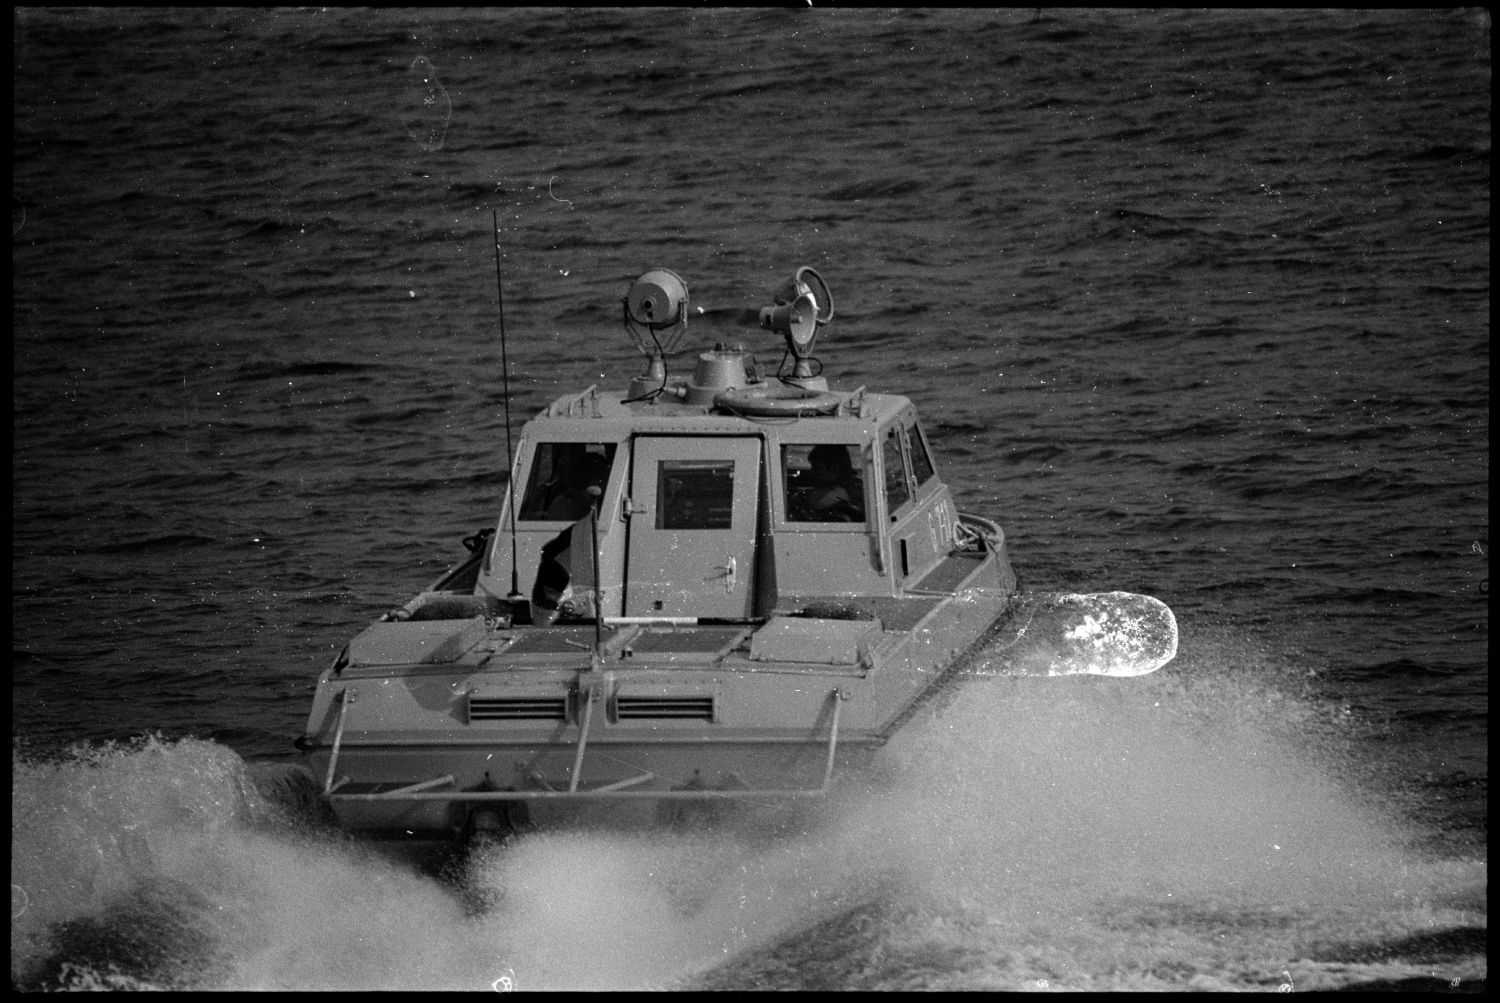 s/w-Fotografie: Patrouillenboot der Grenztruppen der DDR auf der Havel zwischen West-Berlin und Potsdam (AlliiertenMuseum/U.S. Army Photograph Public Domain Mark)